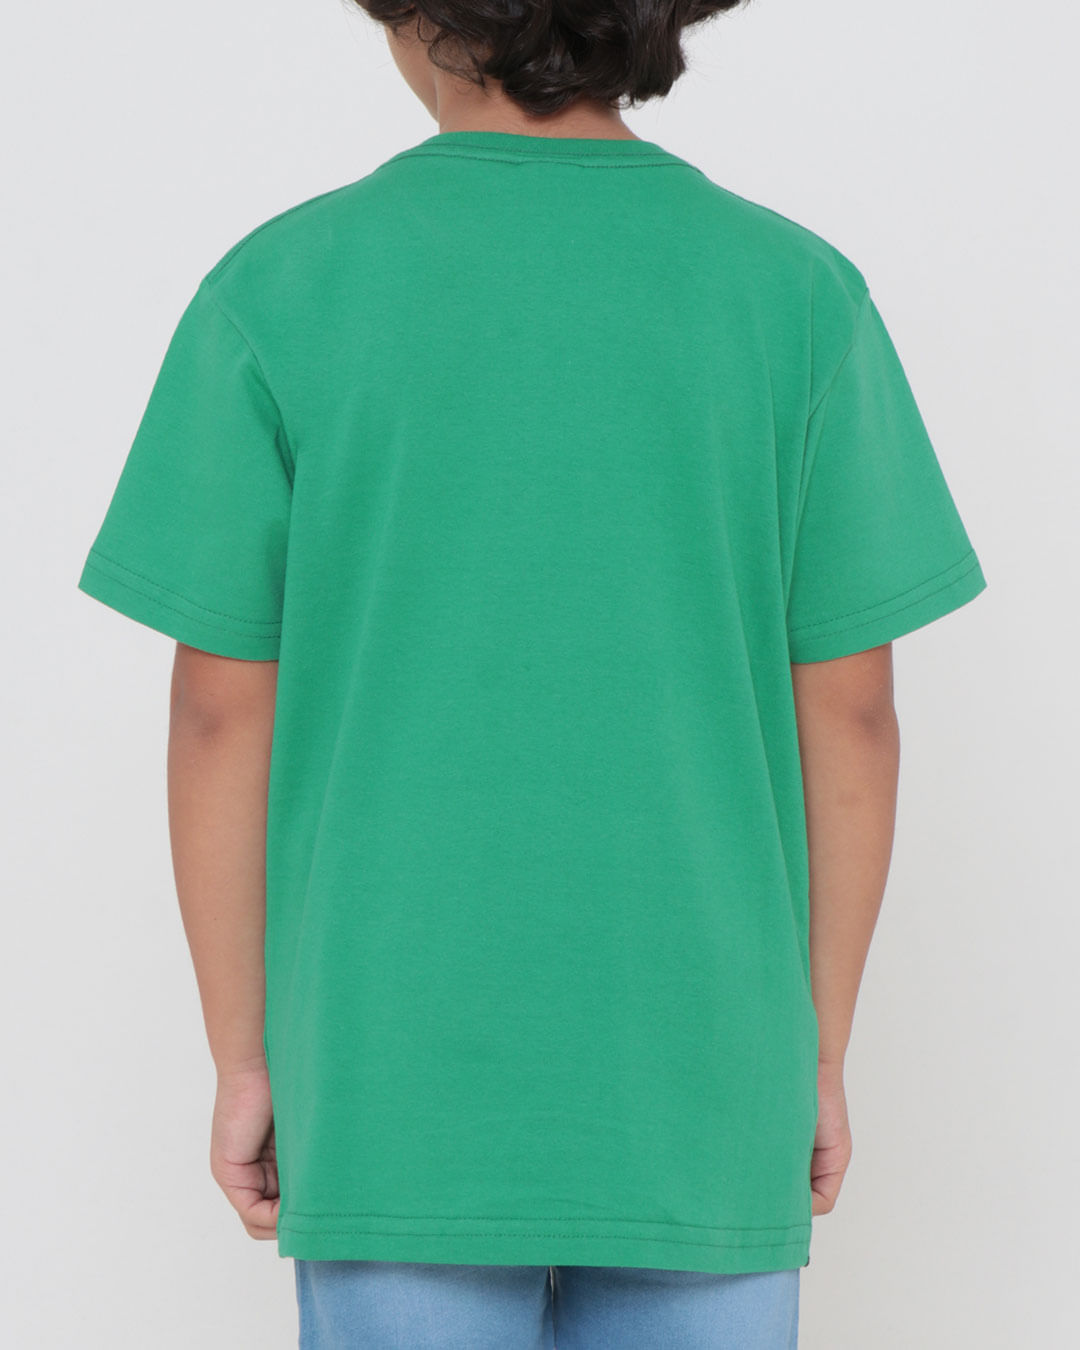 Camiseta-Ch26783-Mc-M410-Hulk---Verde-Medio